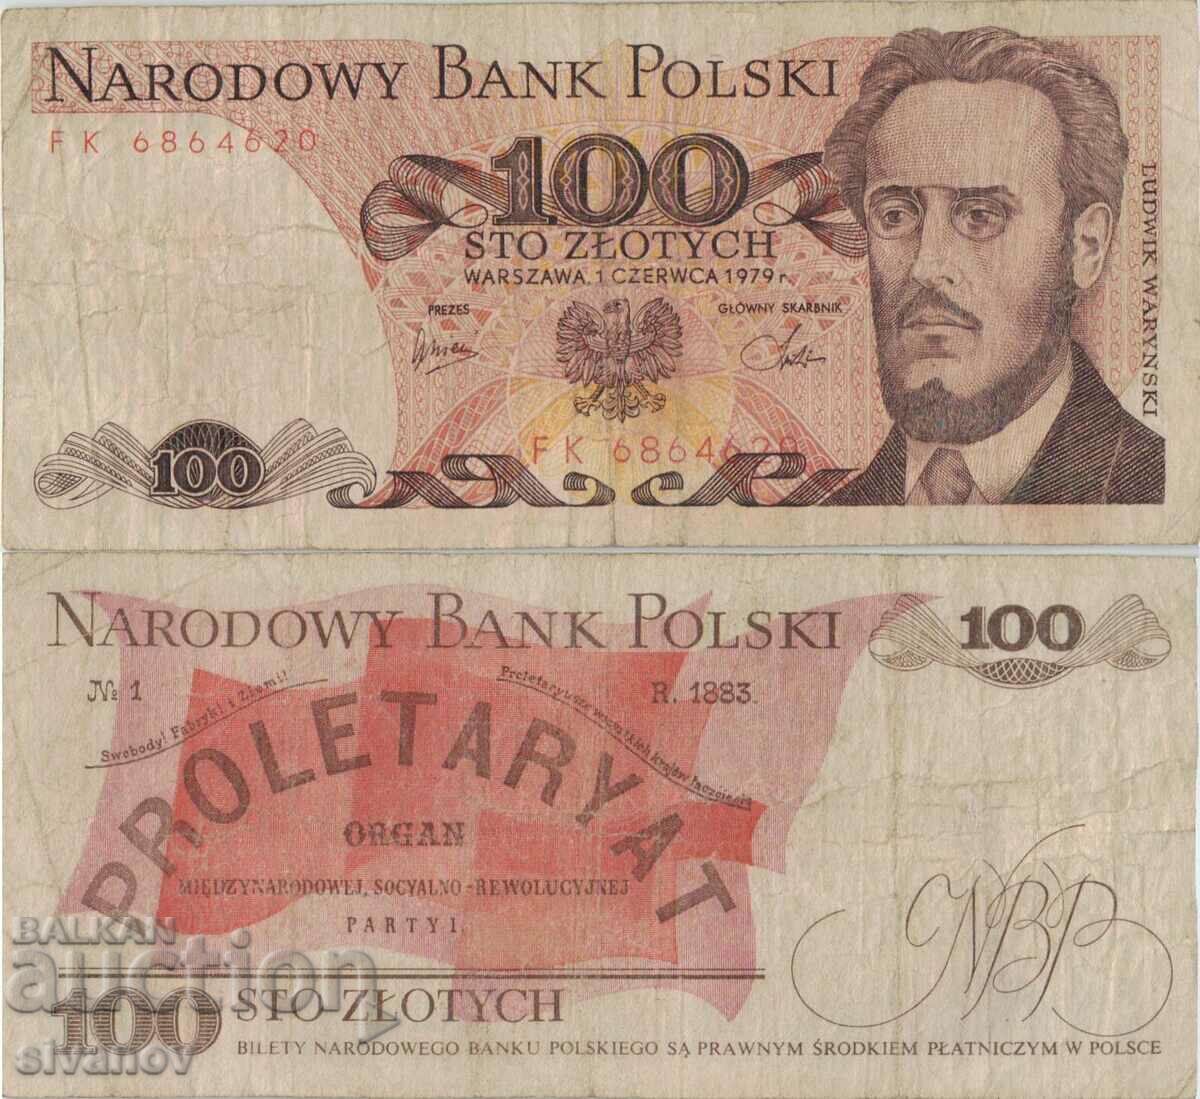 Polonia 100 zloți 1979 bancnota #5300